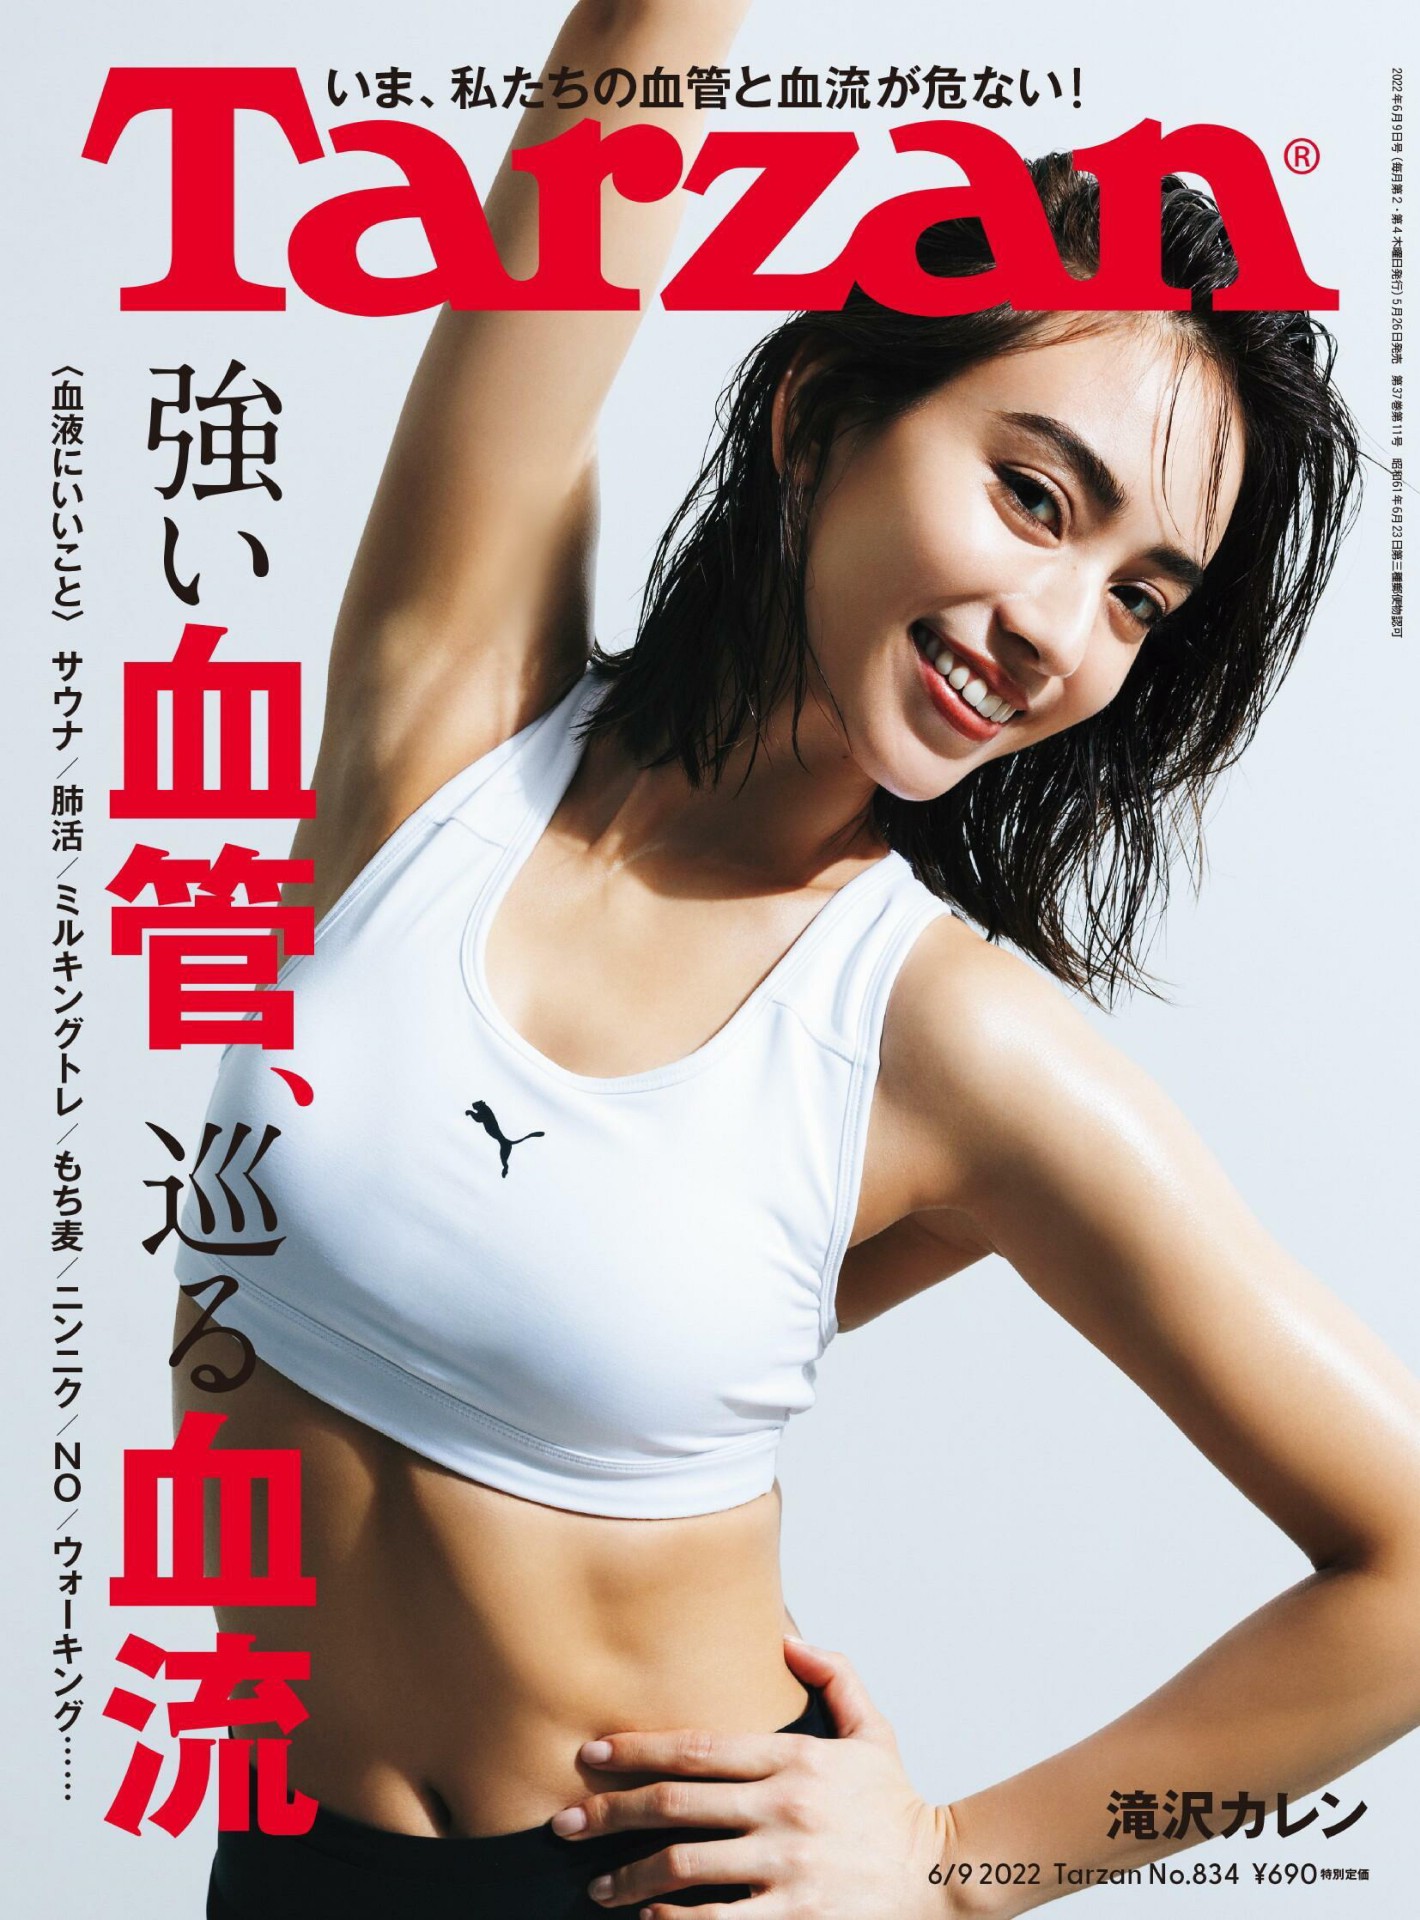 Karen Takizawa 滝沢カレン, Tarzan Magazine 2022.06.09